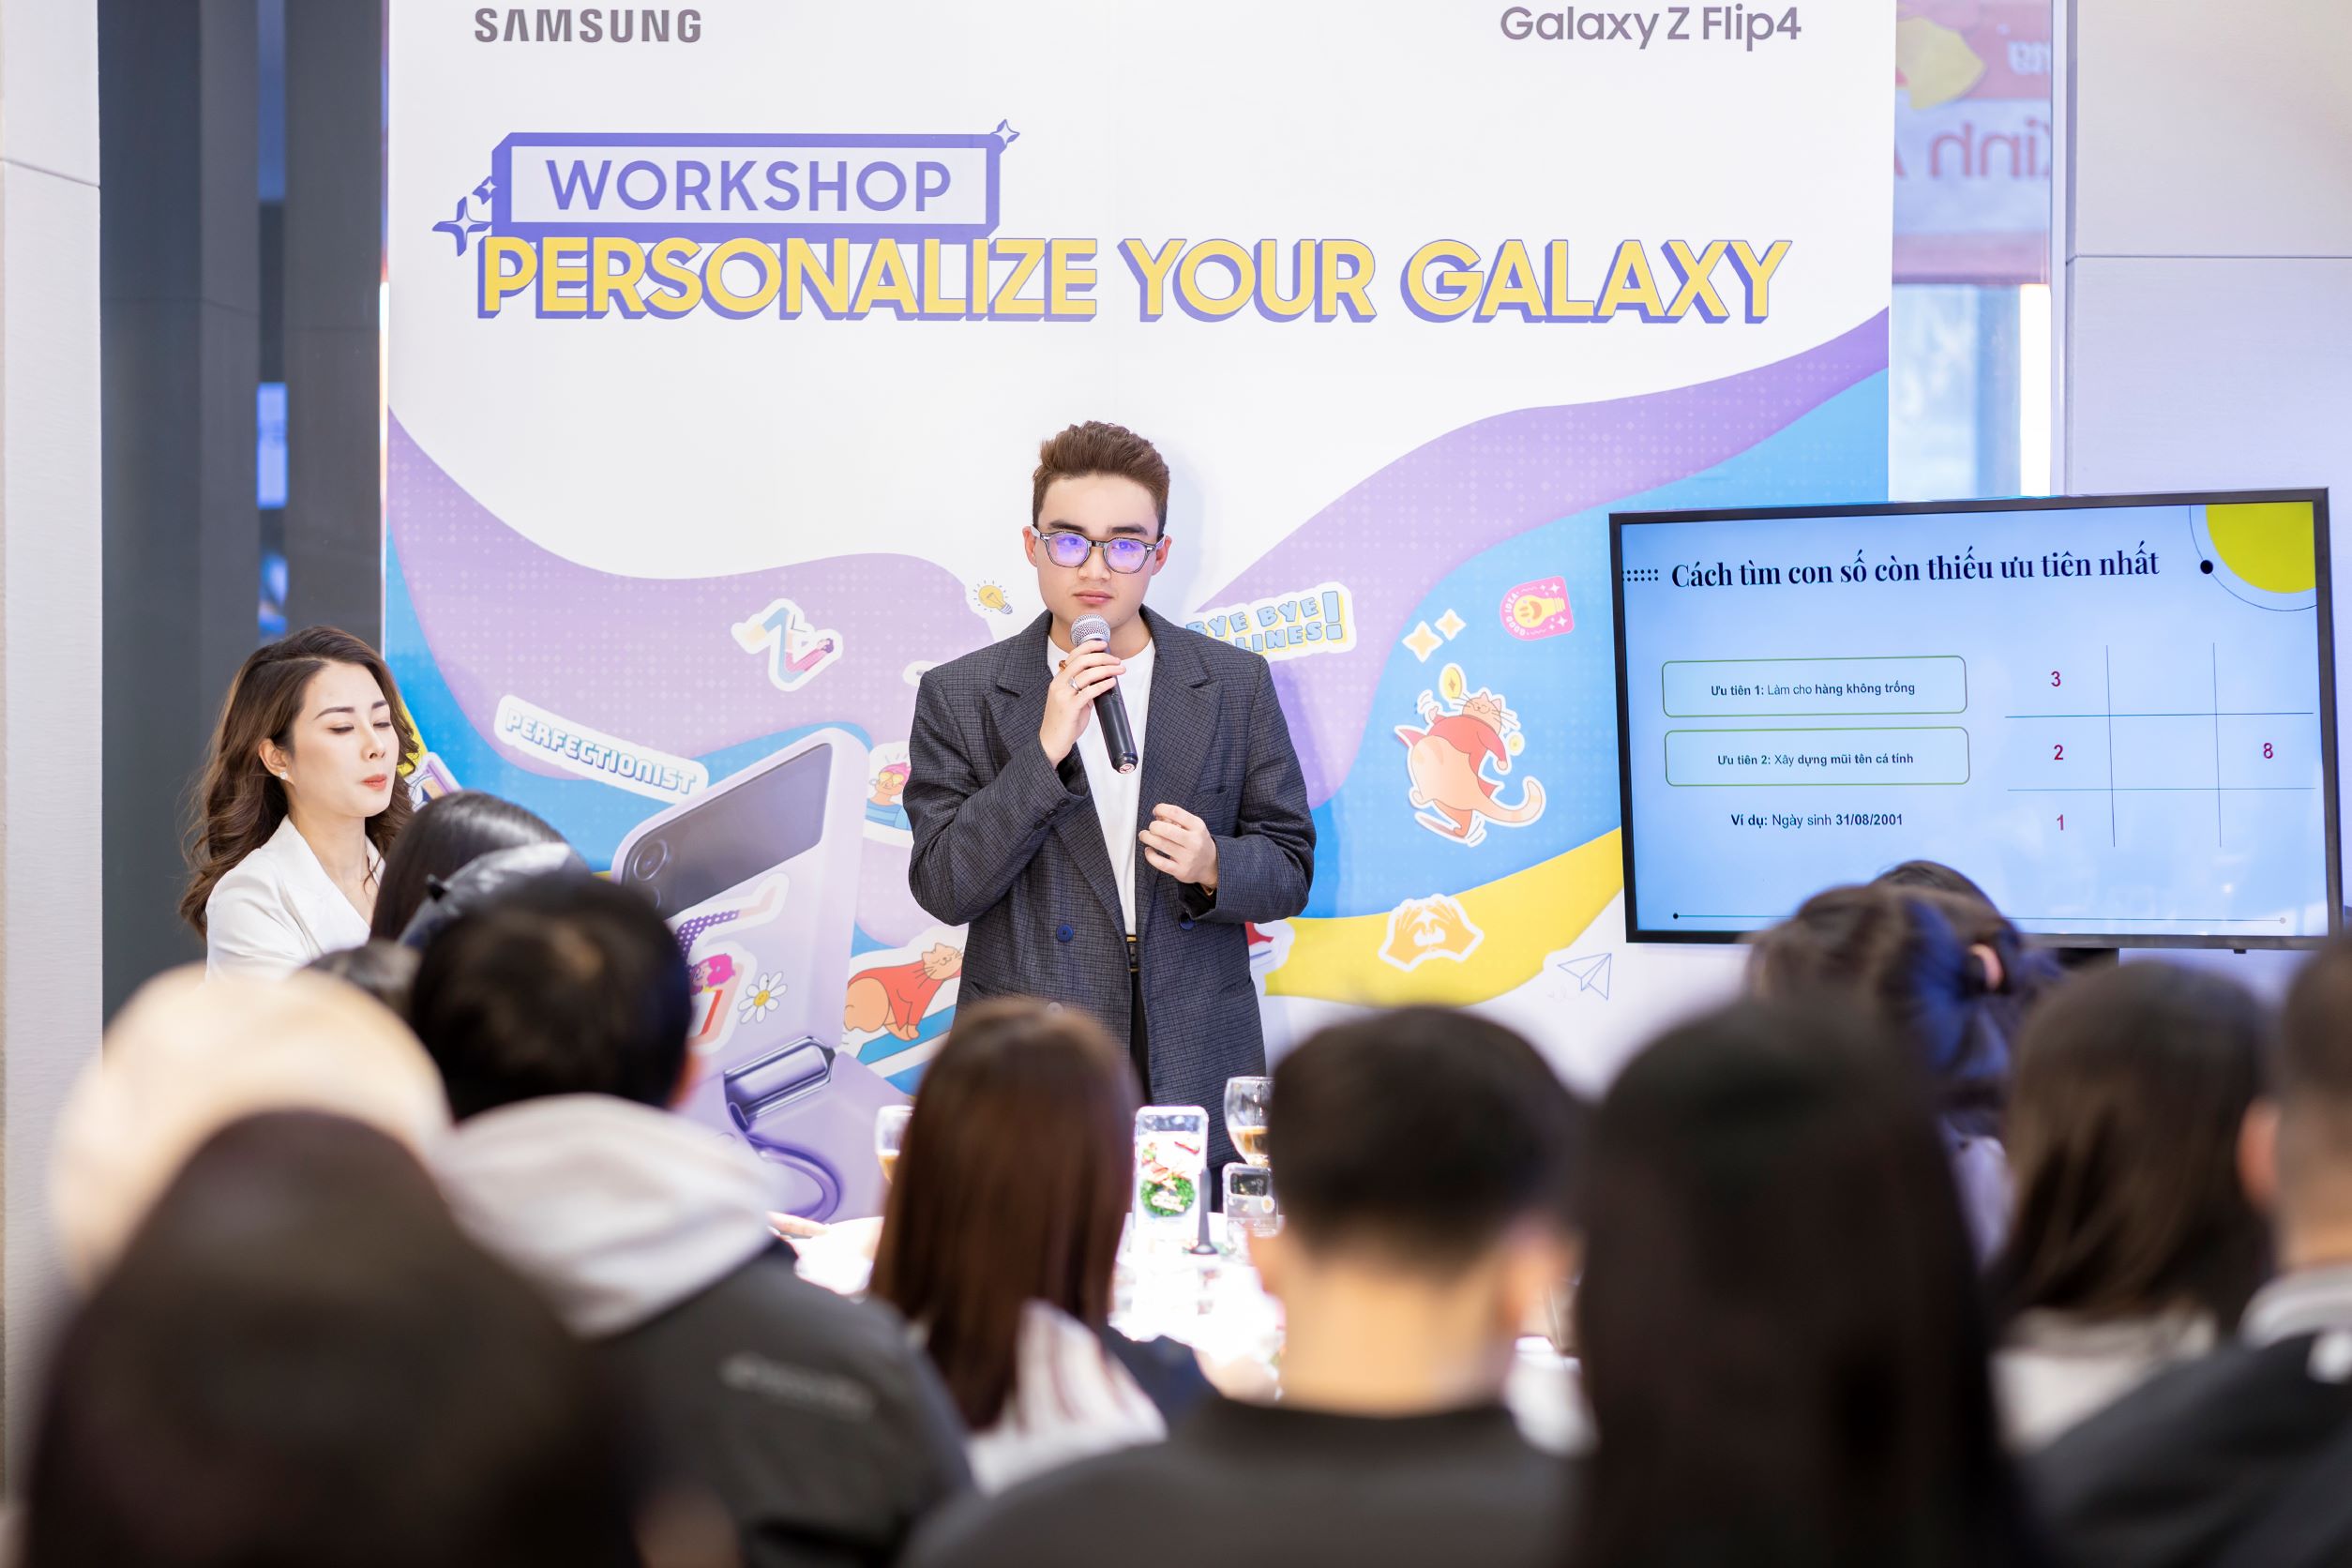 Samsung mang không gian phụ kiện “Cá nhân hóa cùng Galaxy” đến với giới trẻ Hà Nội